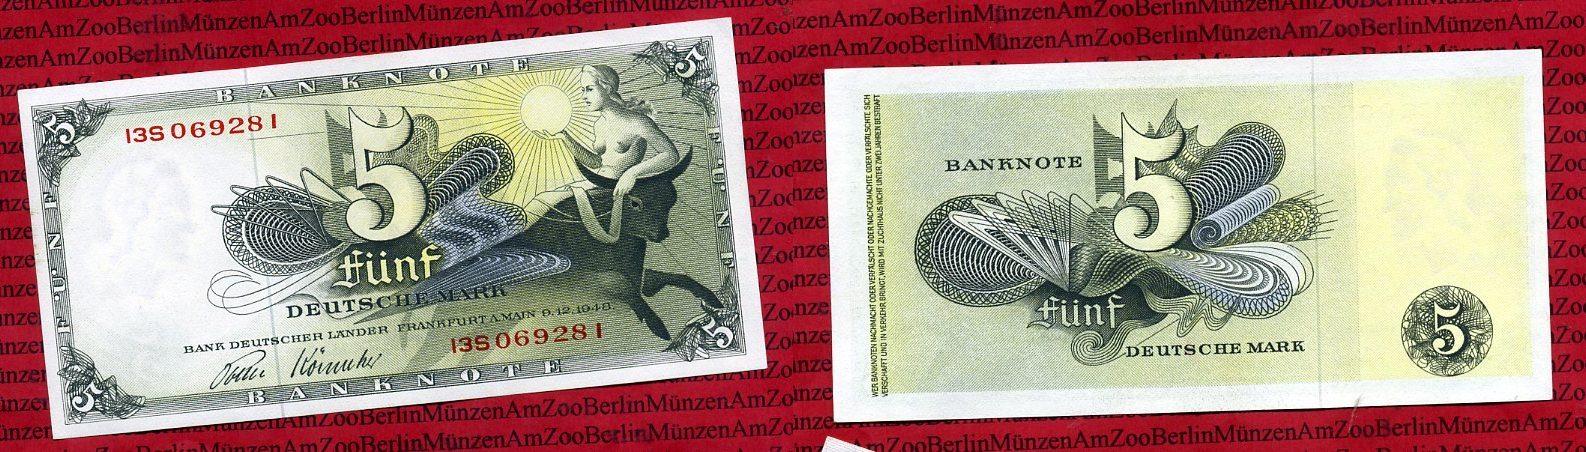 Foto Brd, Bank Deutscher Länder 5 Dm Deutsche Mark Europa Entführung 1948, foto 85363